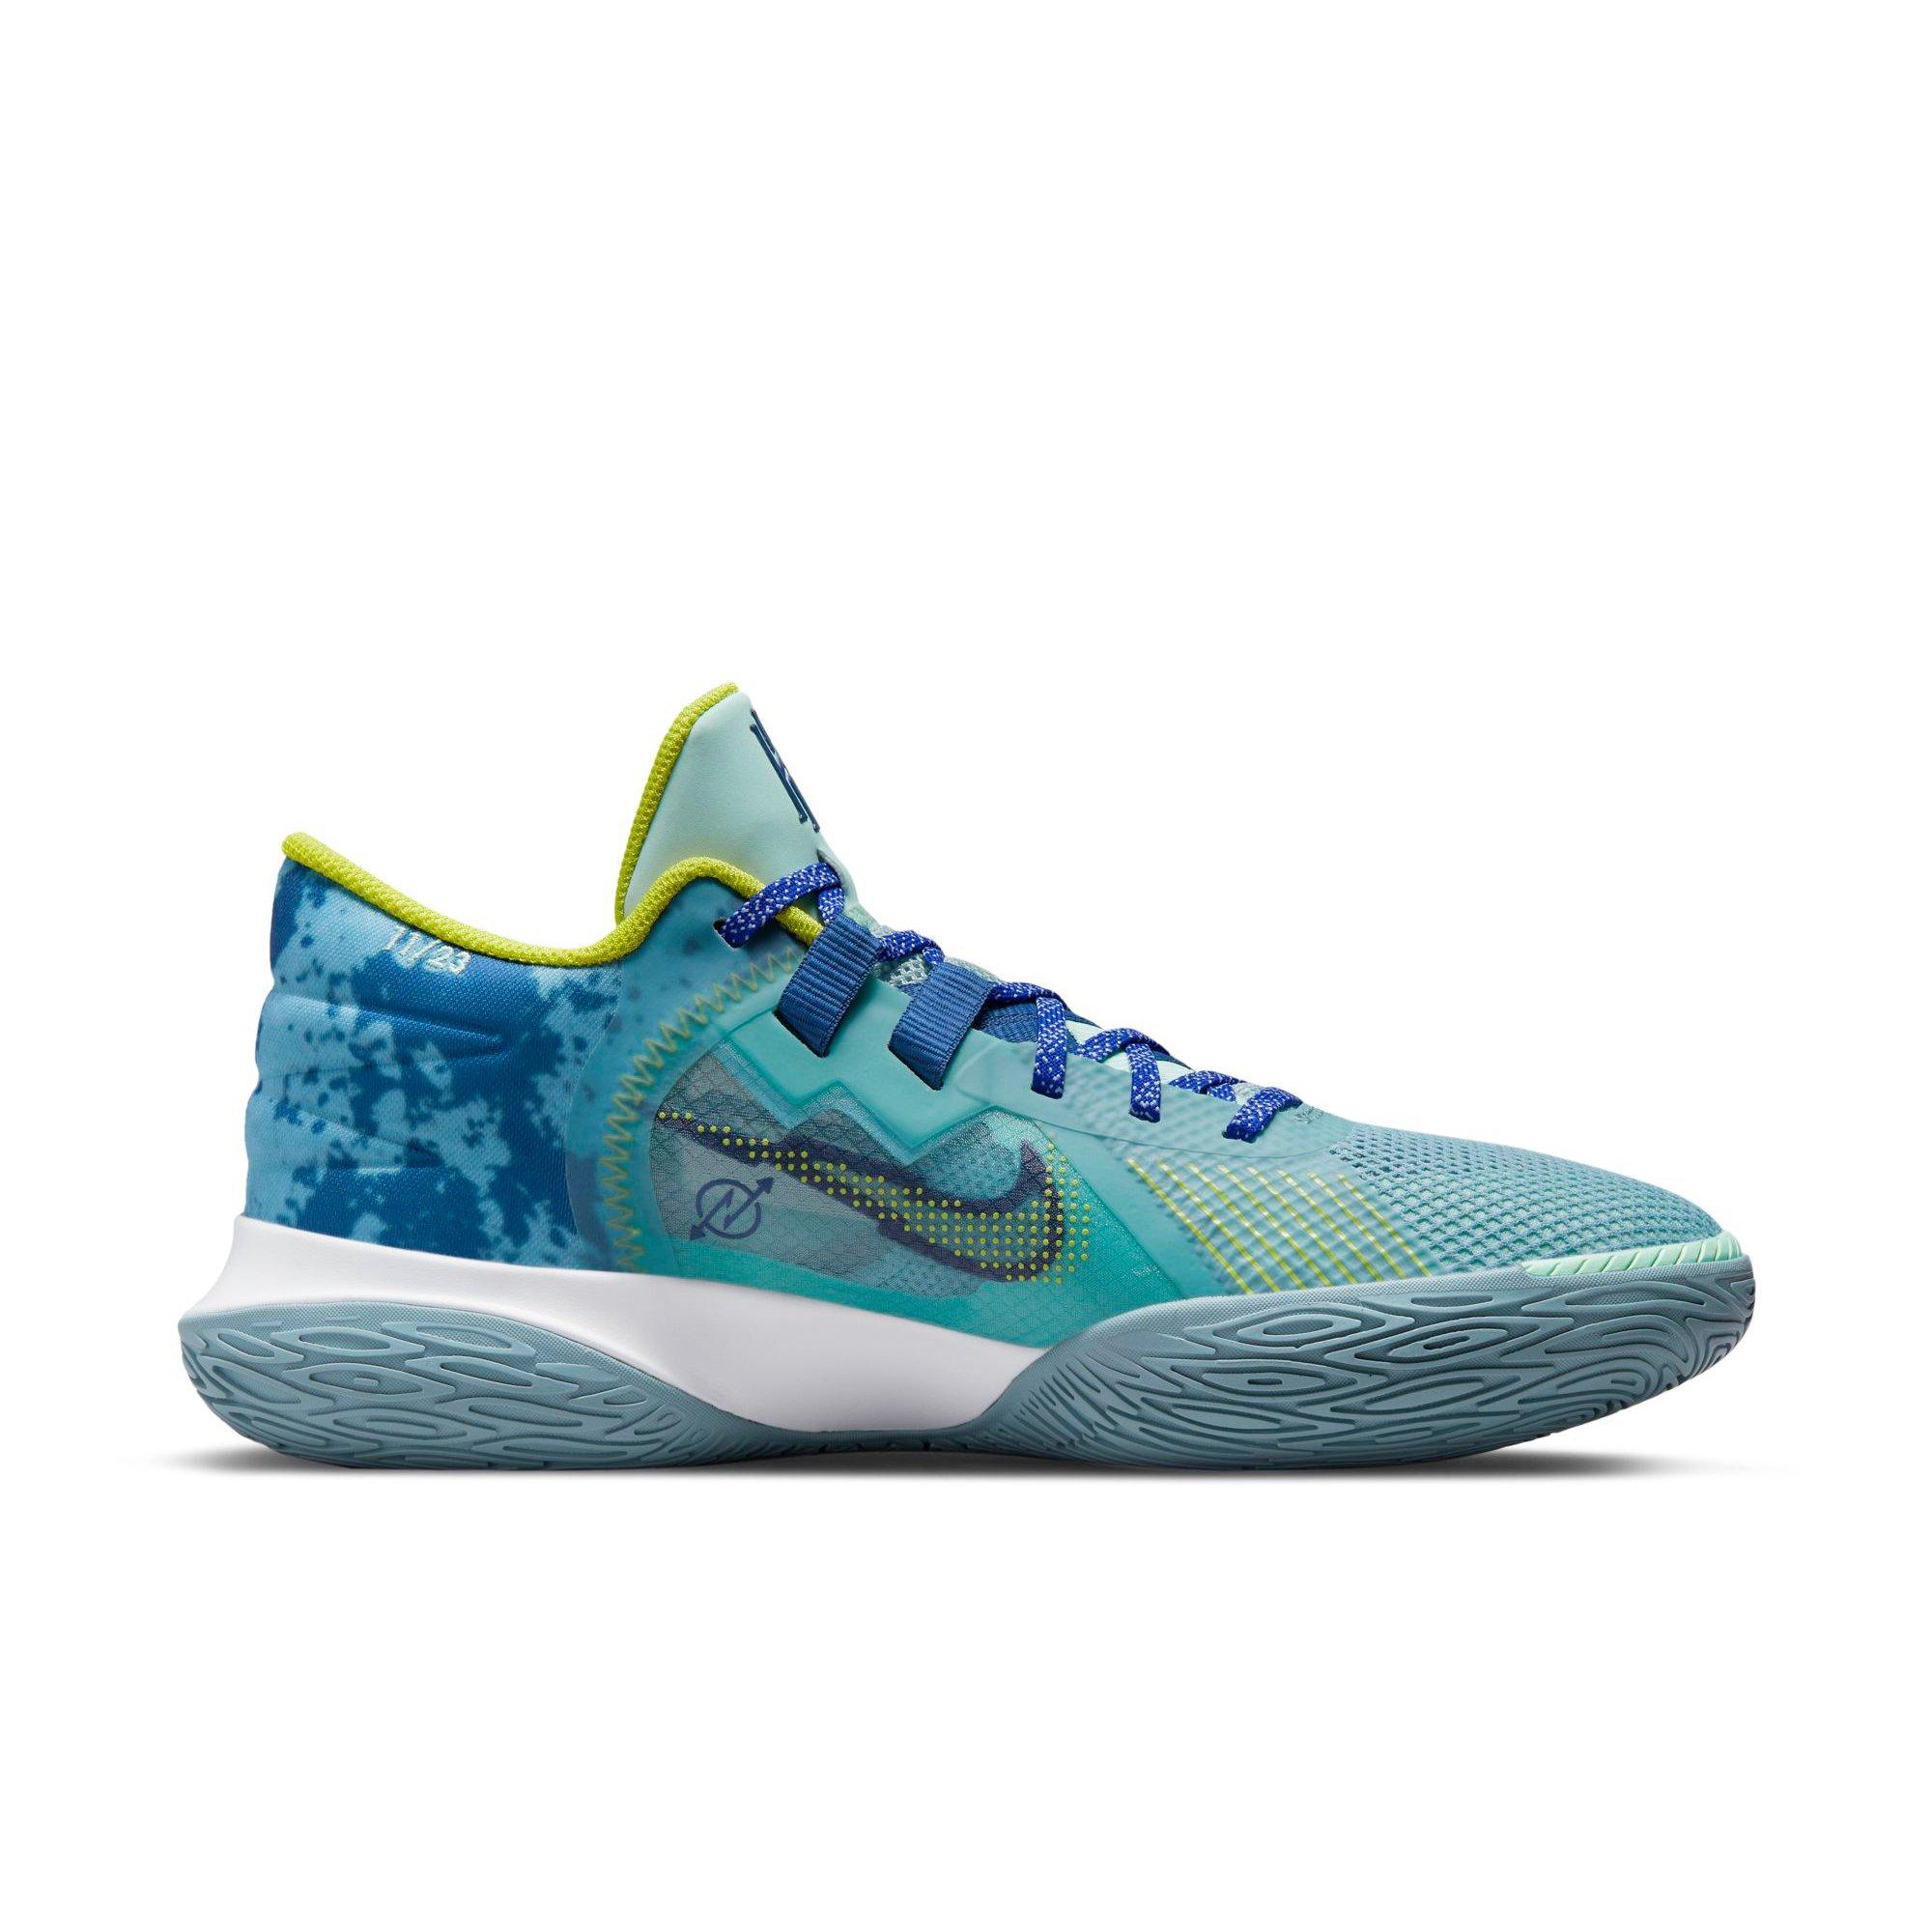 Deambular detalles garaje Nike Kyrie Flytrap 5 "Waves" Men's Basketball Shoe